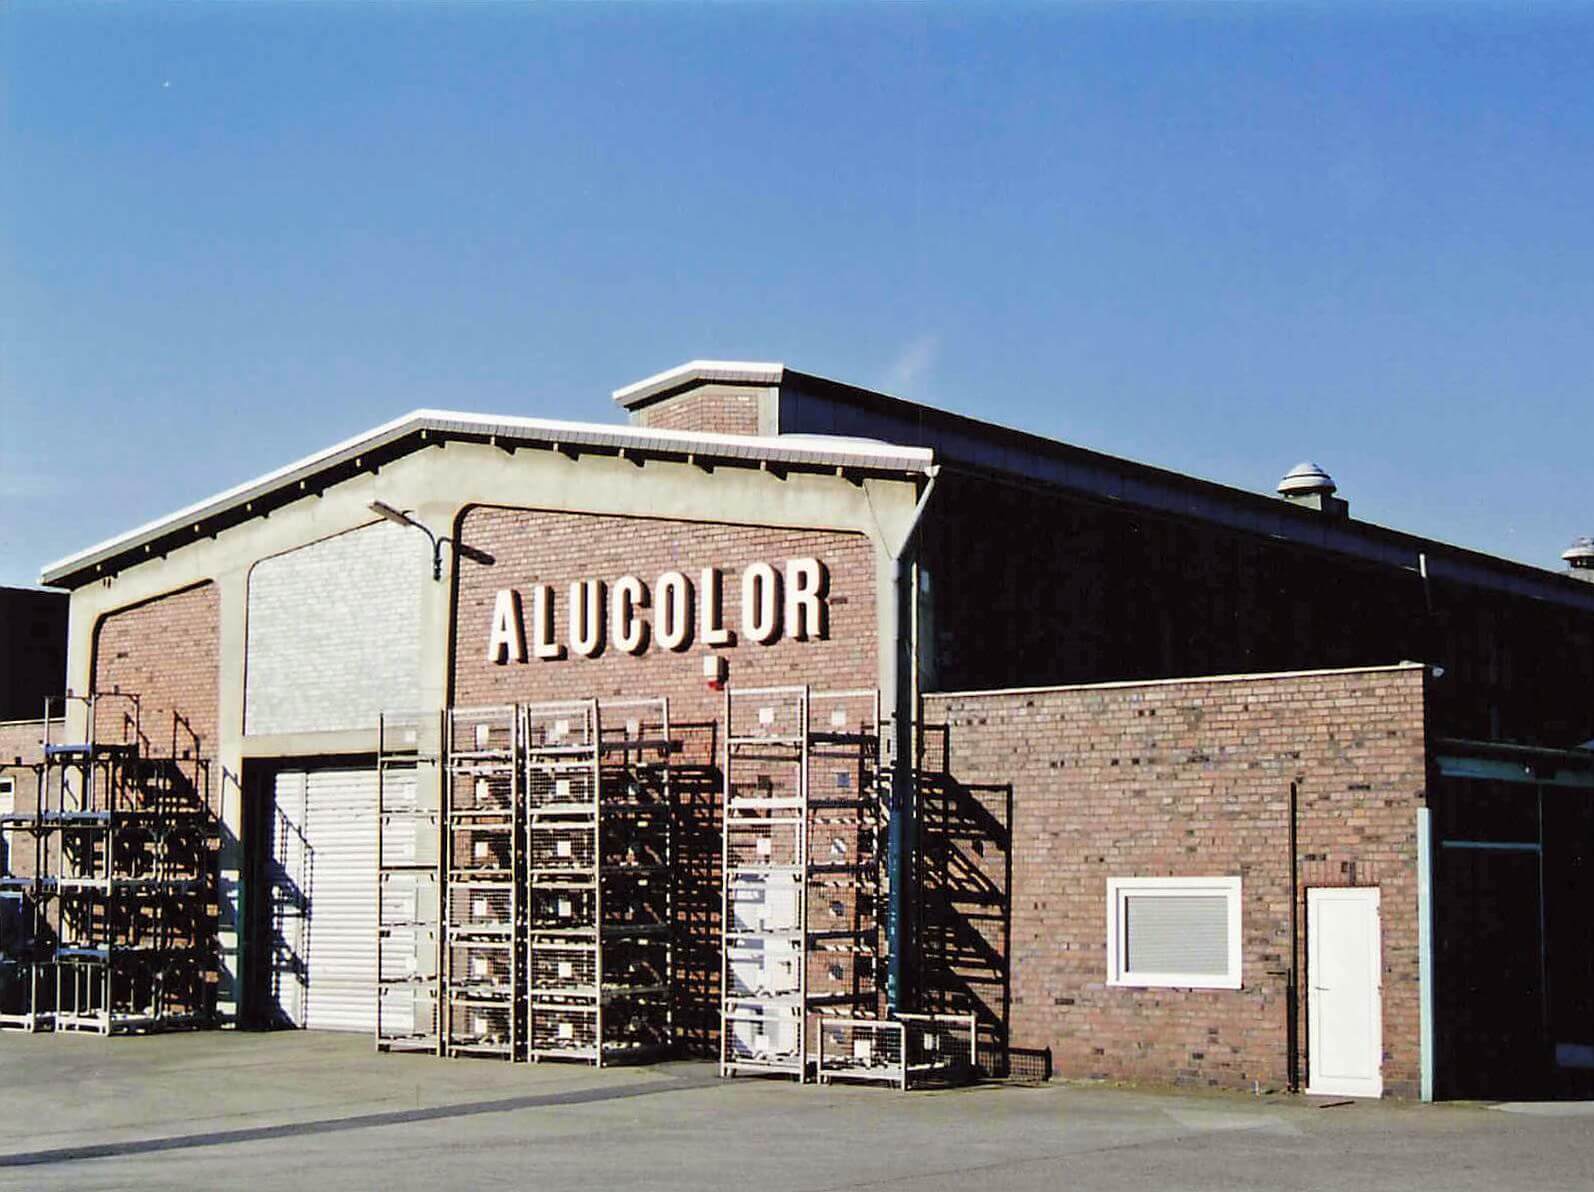 Gewerbliche Nutzung des Grundstücks durch die Firma Alucolor